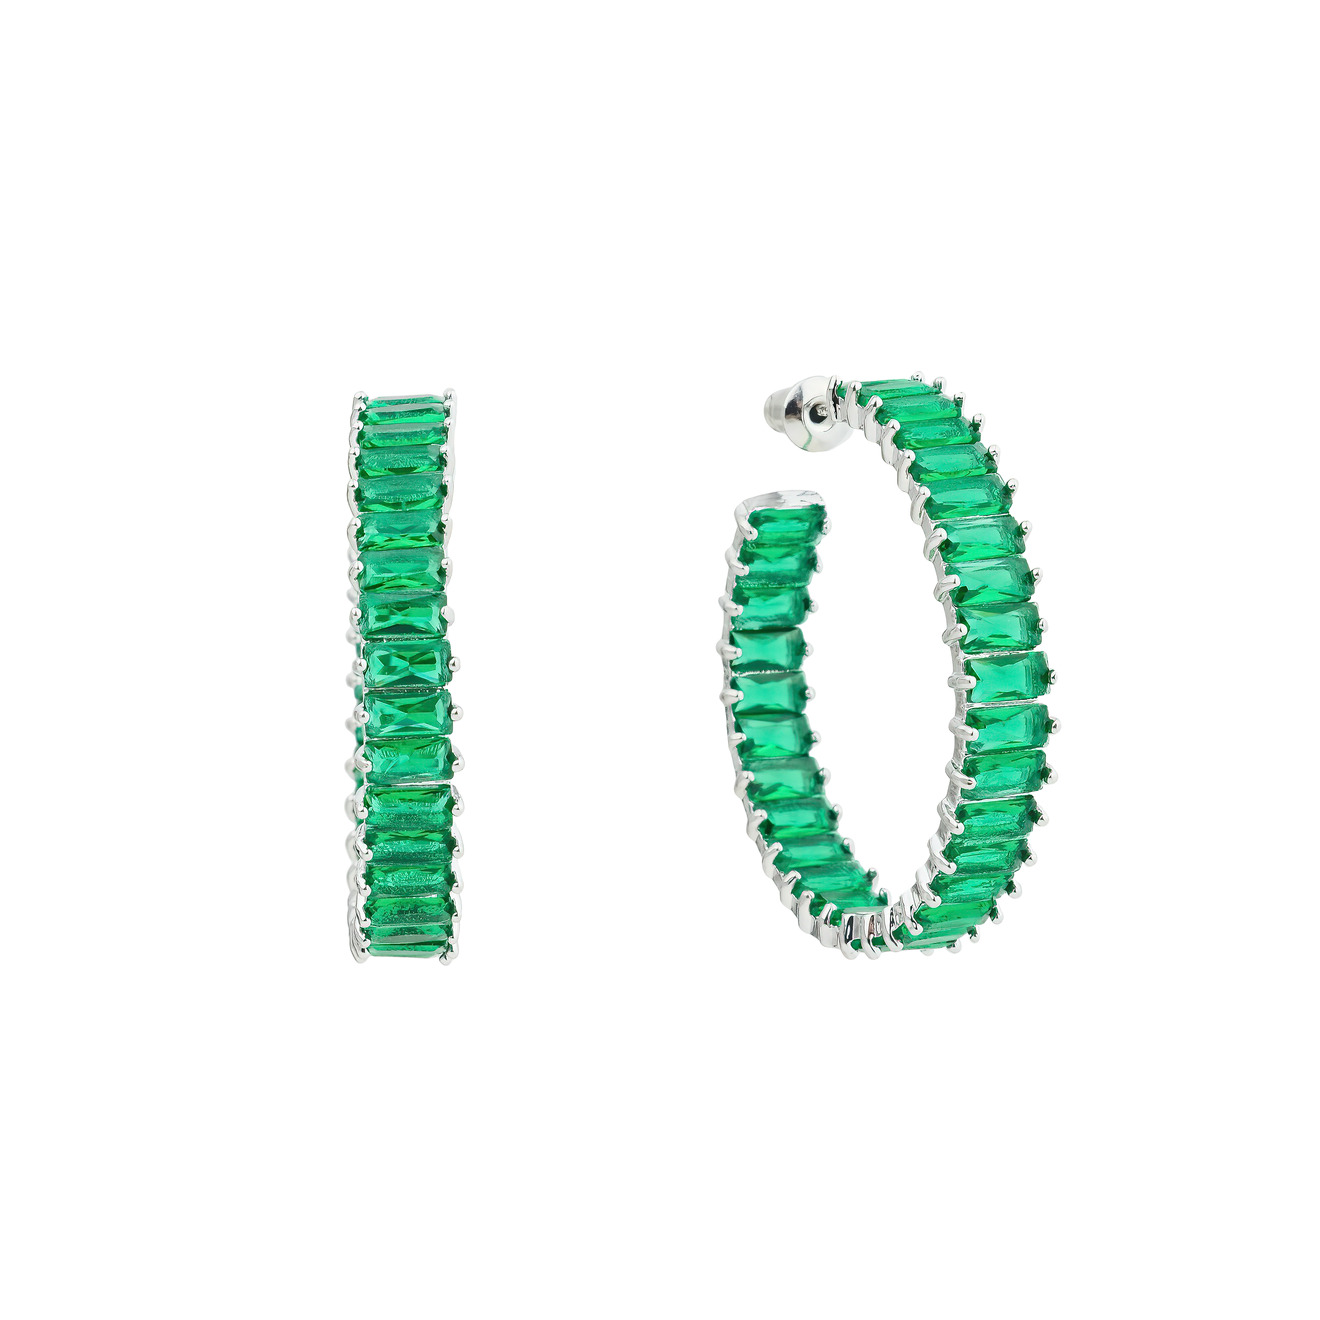 Herald Percy Серьги-кольца с зелеными кристаллами herald percy золотистый браслет с зелеными кристаллами